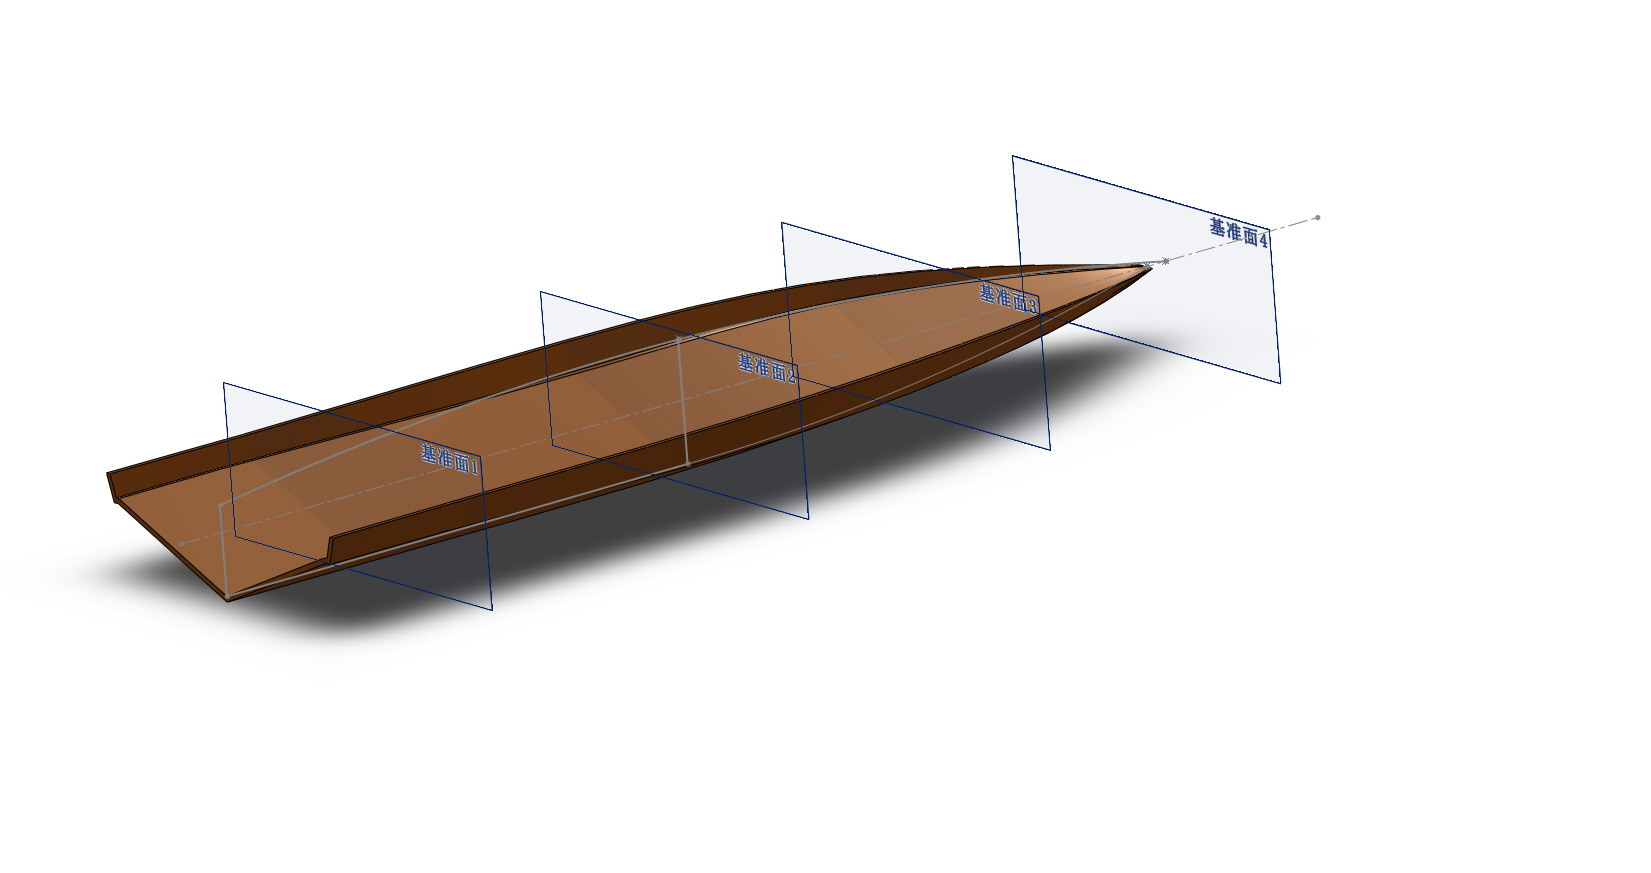 65厘米O艇  制作过程 图纸 作者:wengchuankuo 5637 